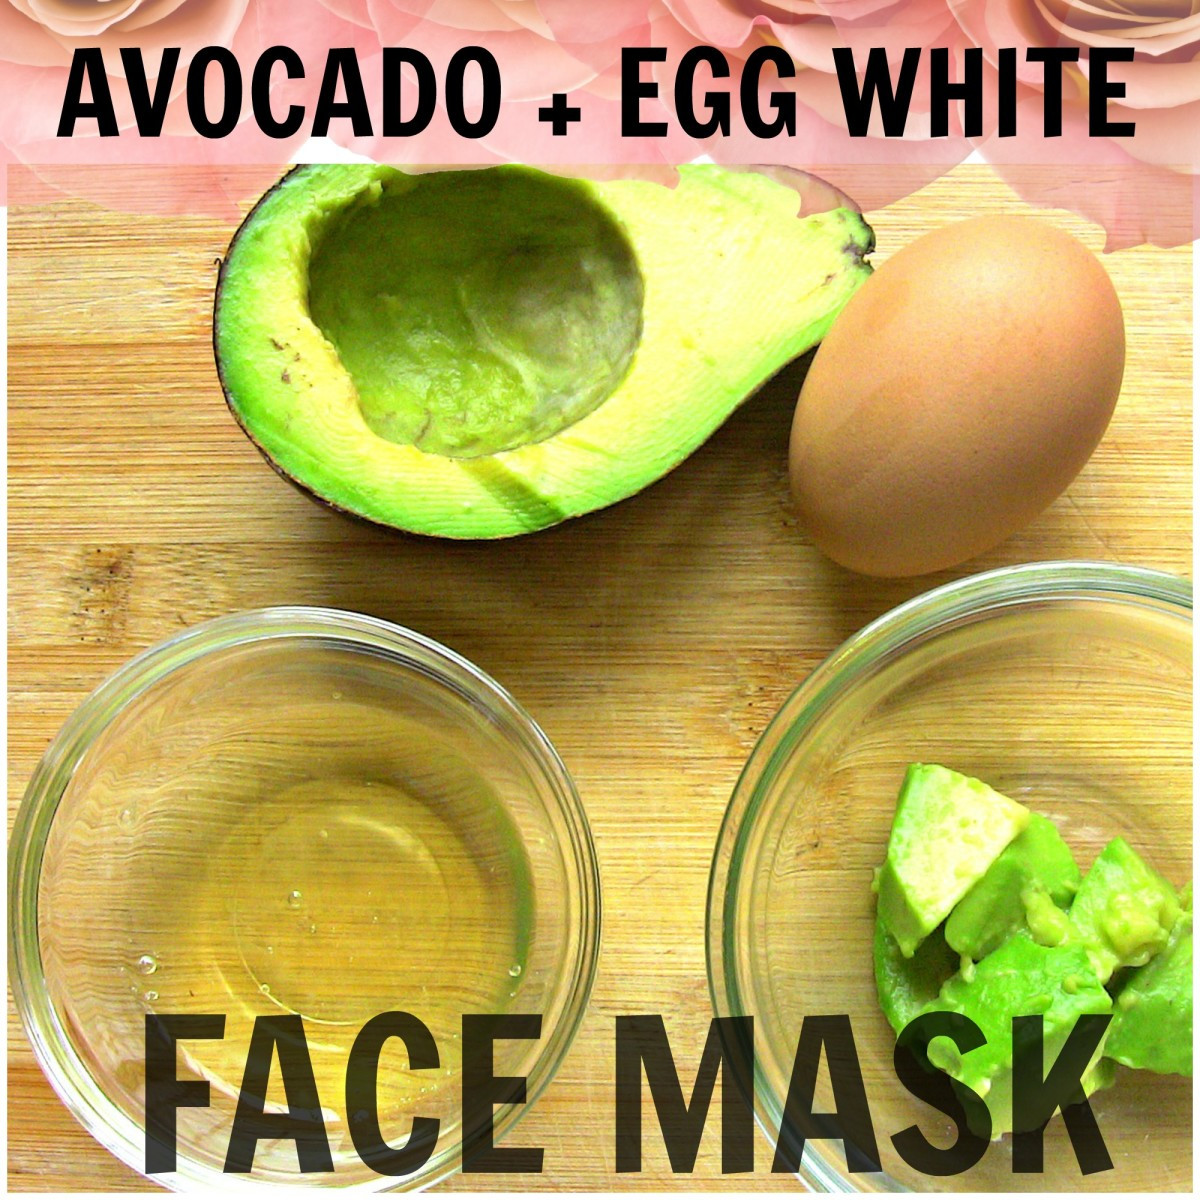 DIY Avocado Face Mask
 DIY Avocado Egg White Face Mask